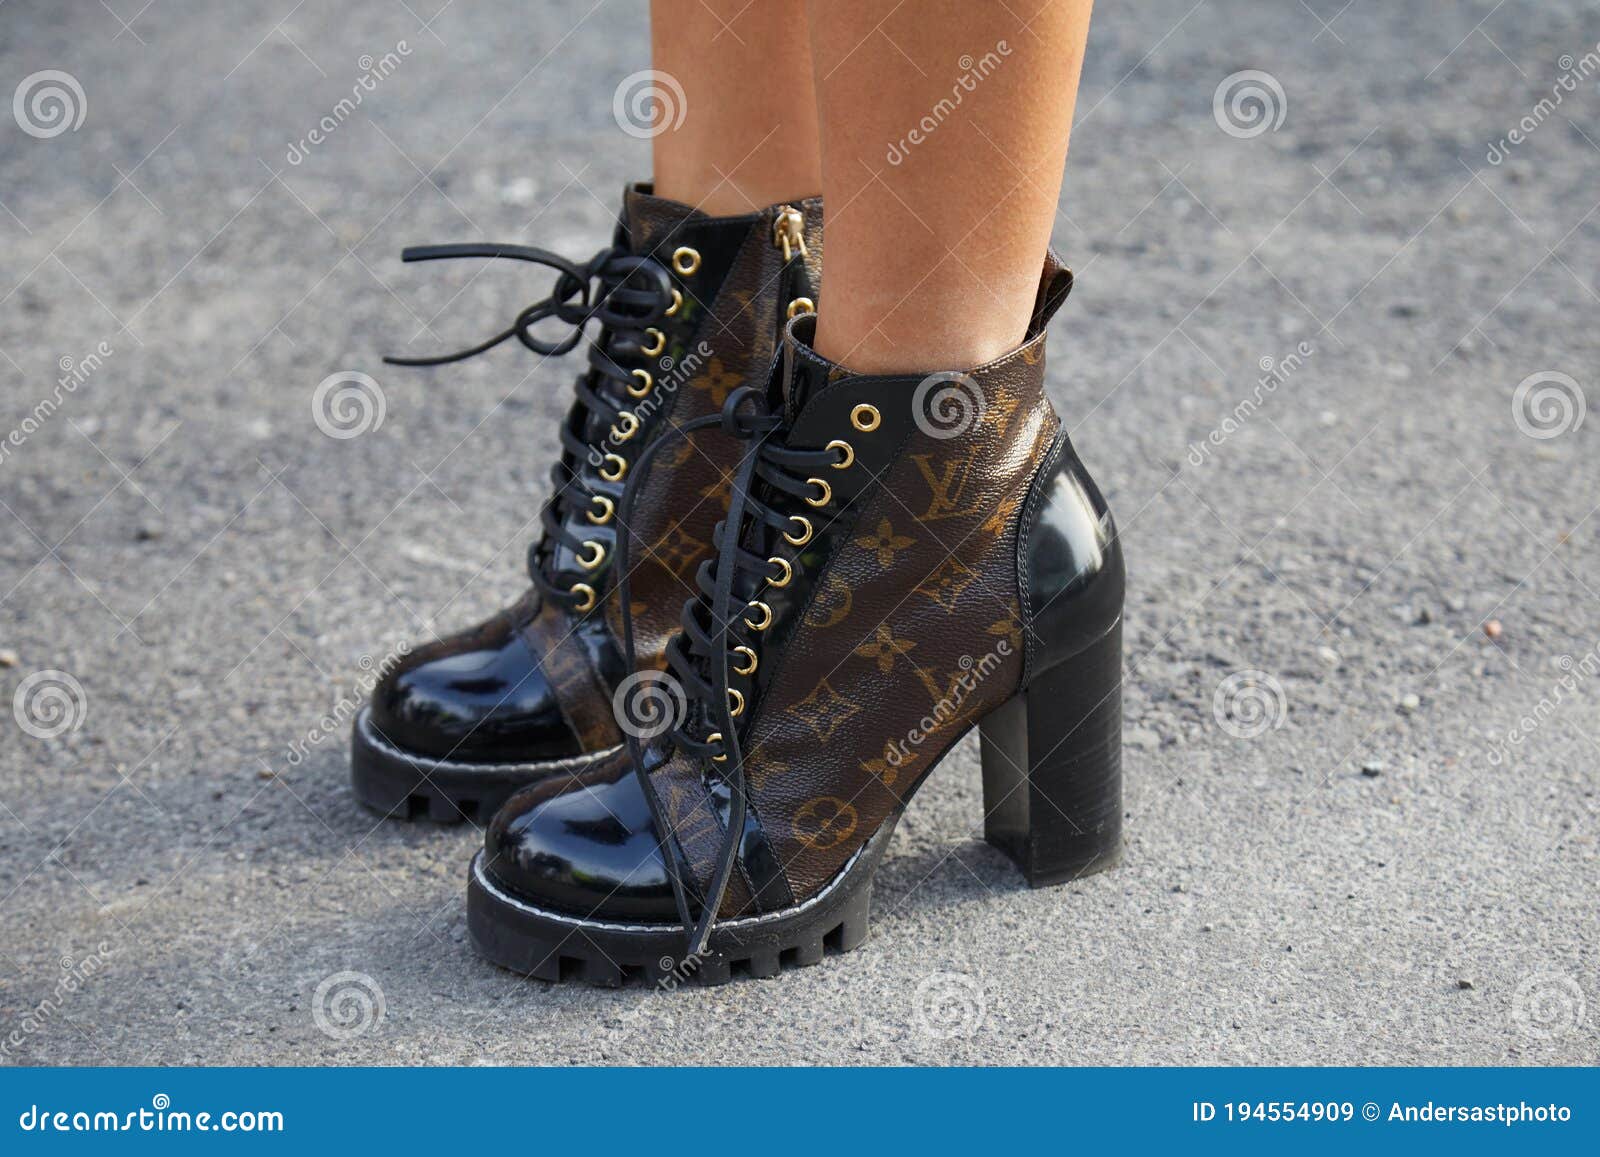 Louis Vuitton, Shoes, Louis Vuitton Combat Boots For Women